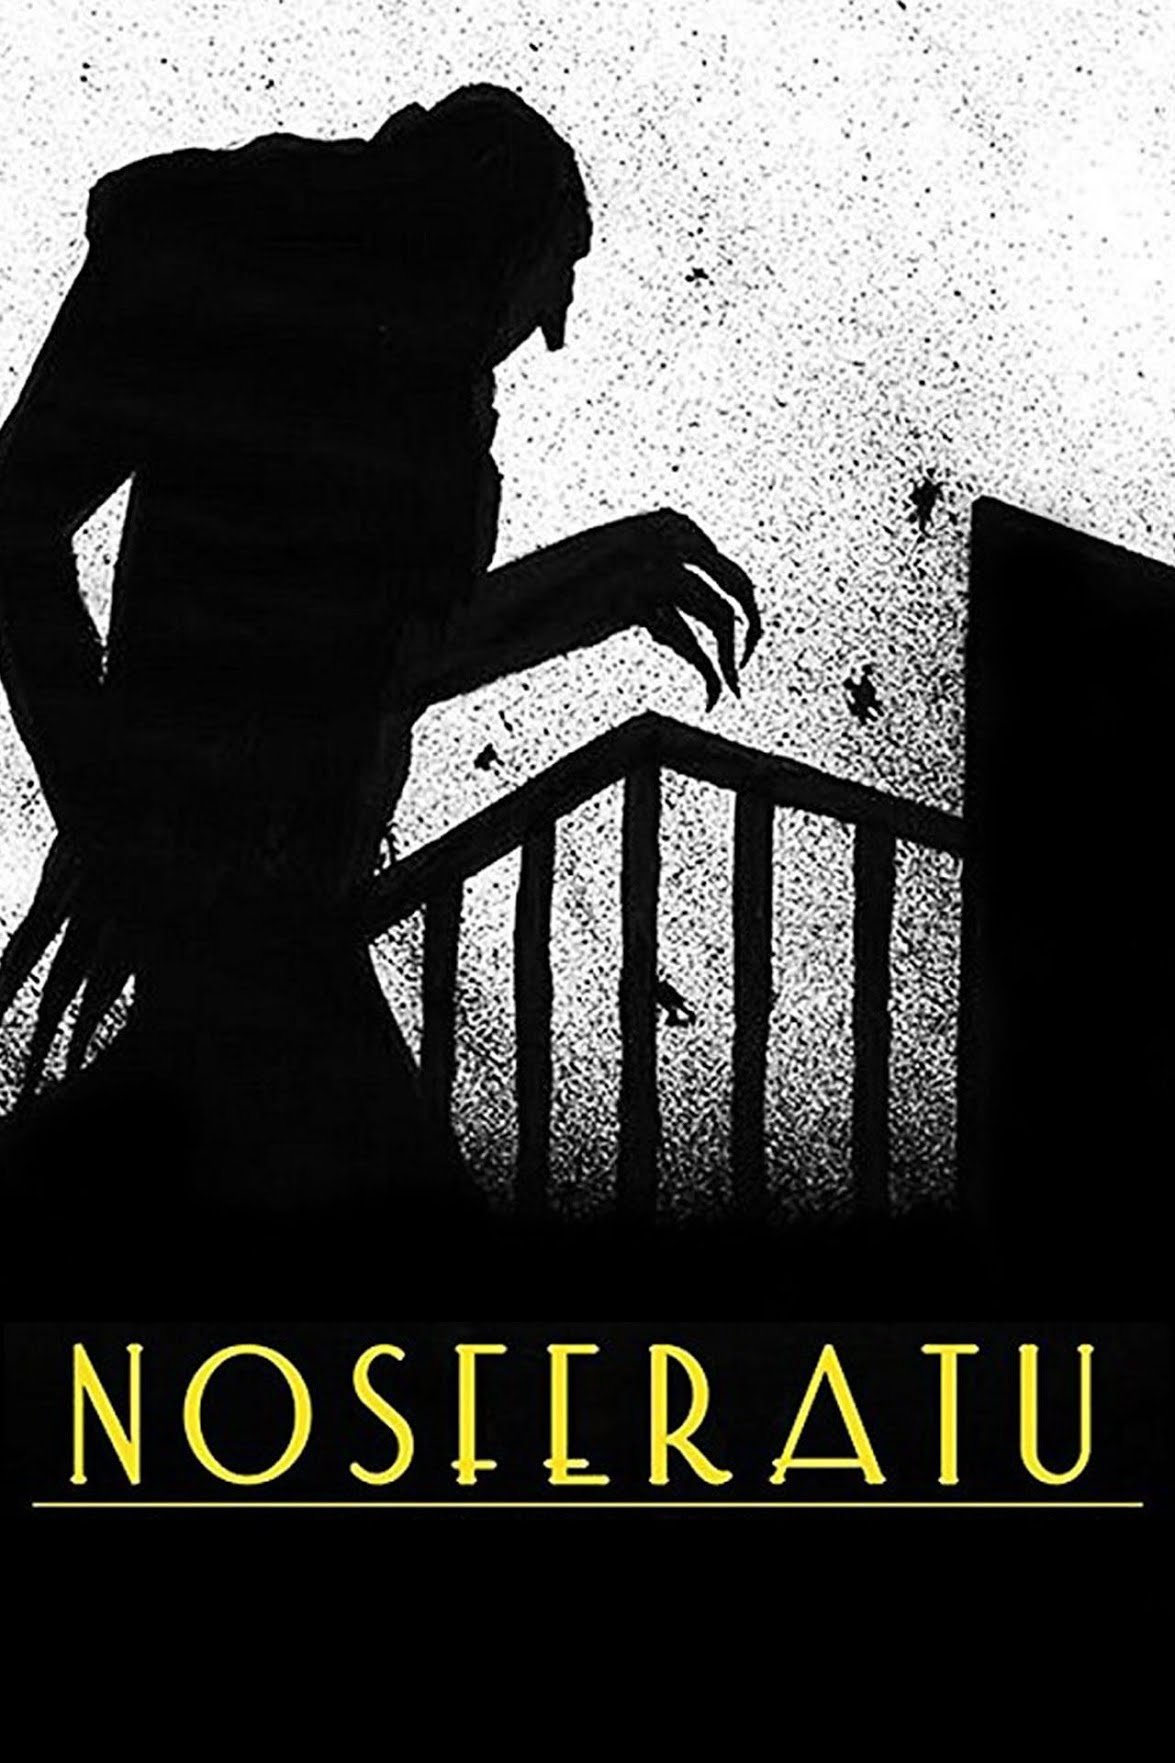 The Legacy of Nosferatu in the Horror Film Genre